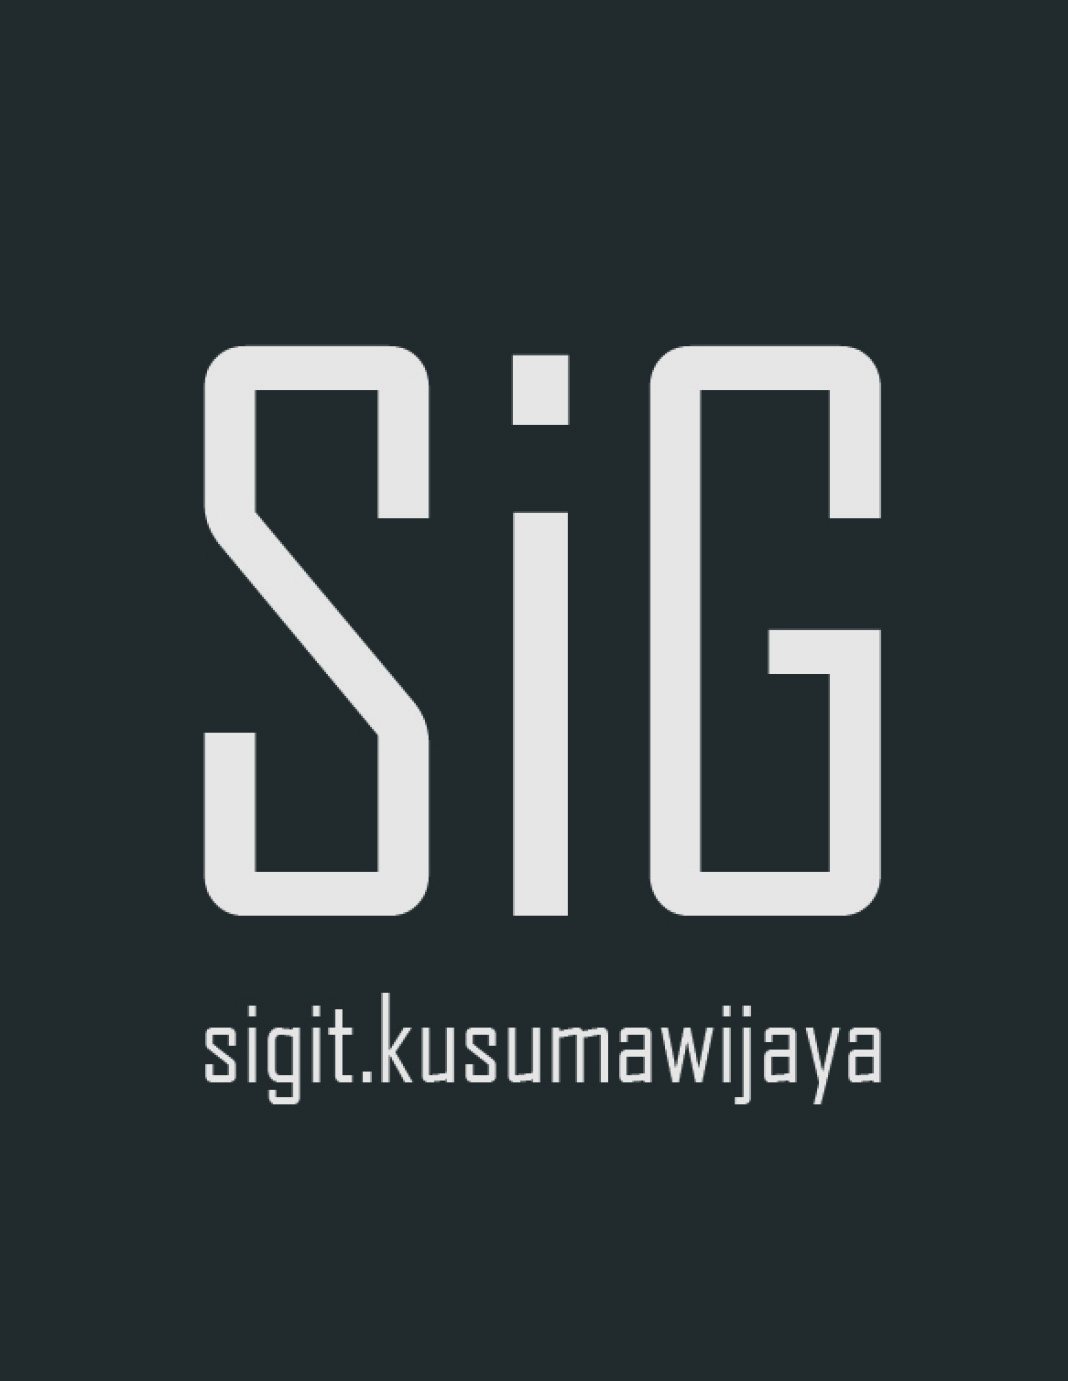 Sigit-Kusumawijaya-Logo-1068x1381